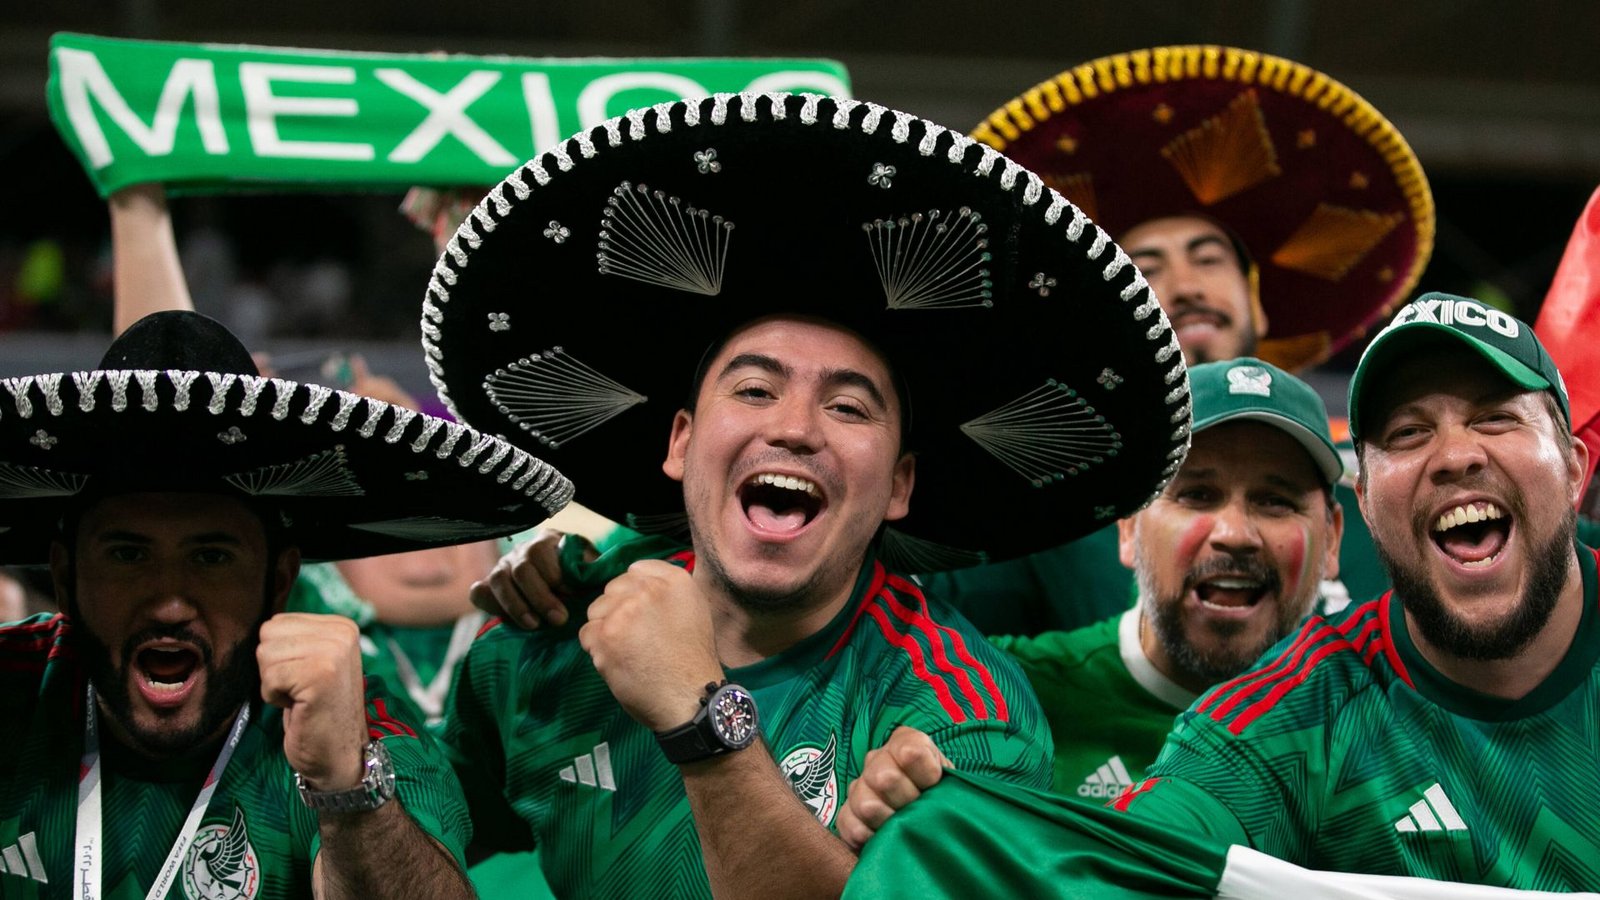 Mexikanische Fans verwundern unseren WM-Reporter mit einer überraschenden Frage. (Symbolbild)Foto: imago//Florencia Tan Jun